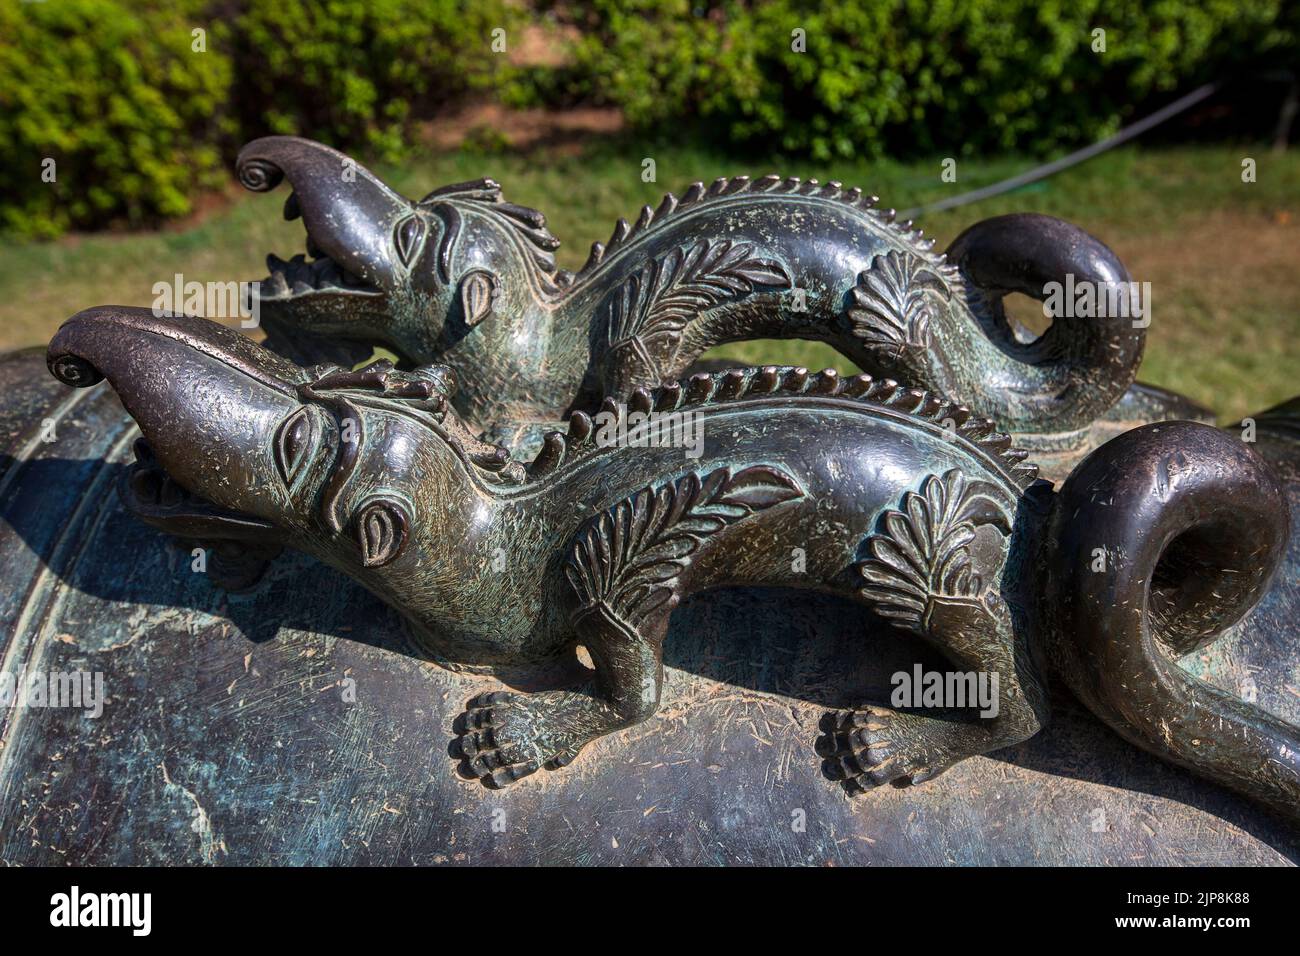 Sculpture de crocodile sur canon, palais Chowmahalla, palais Chowmahalt, palais Nizam, Hyderabad, Andhra Pradesh, Telangana, Inde Banque D'Images